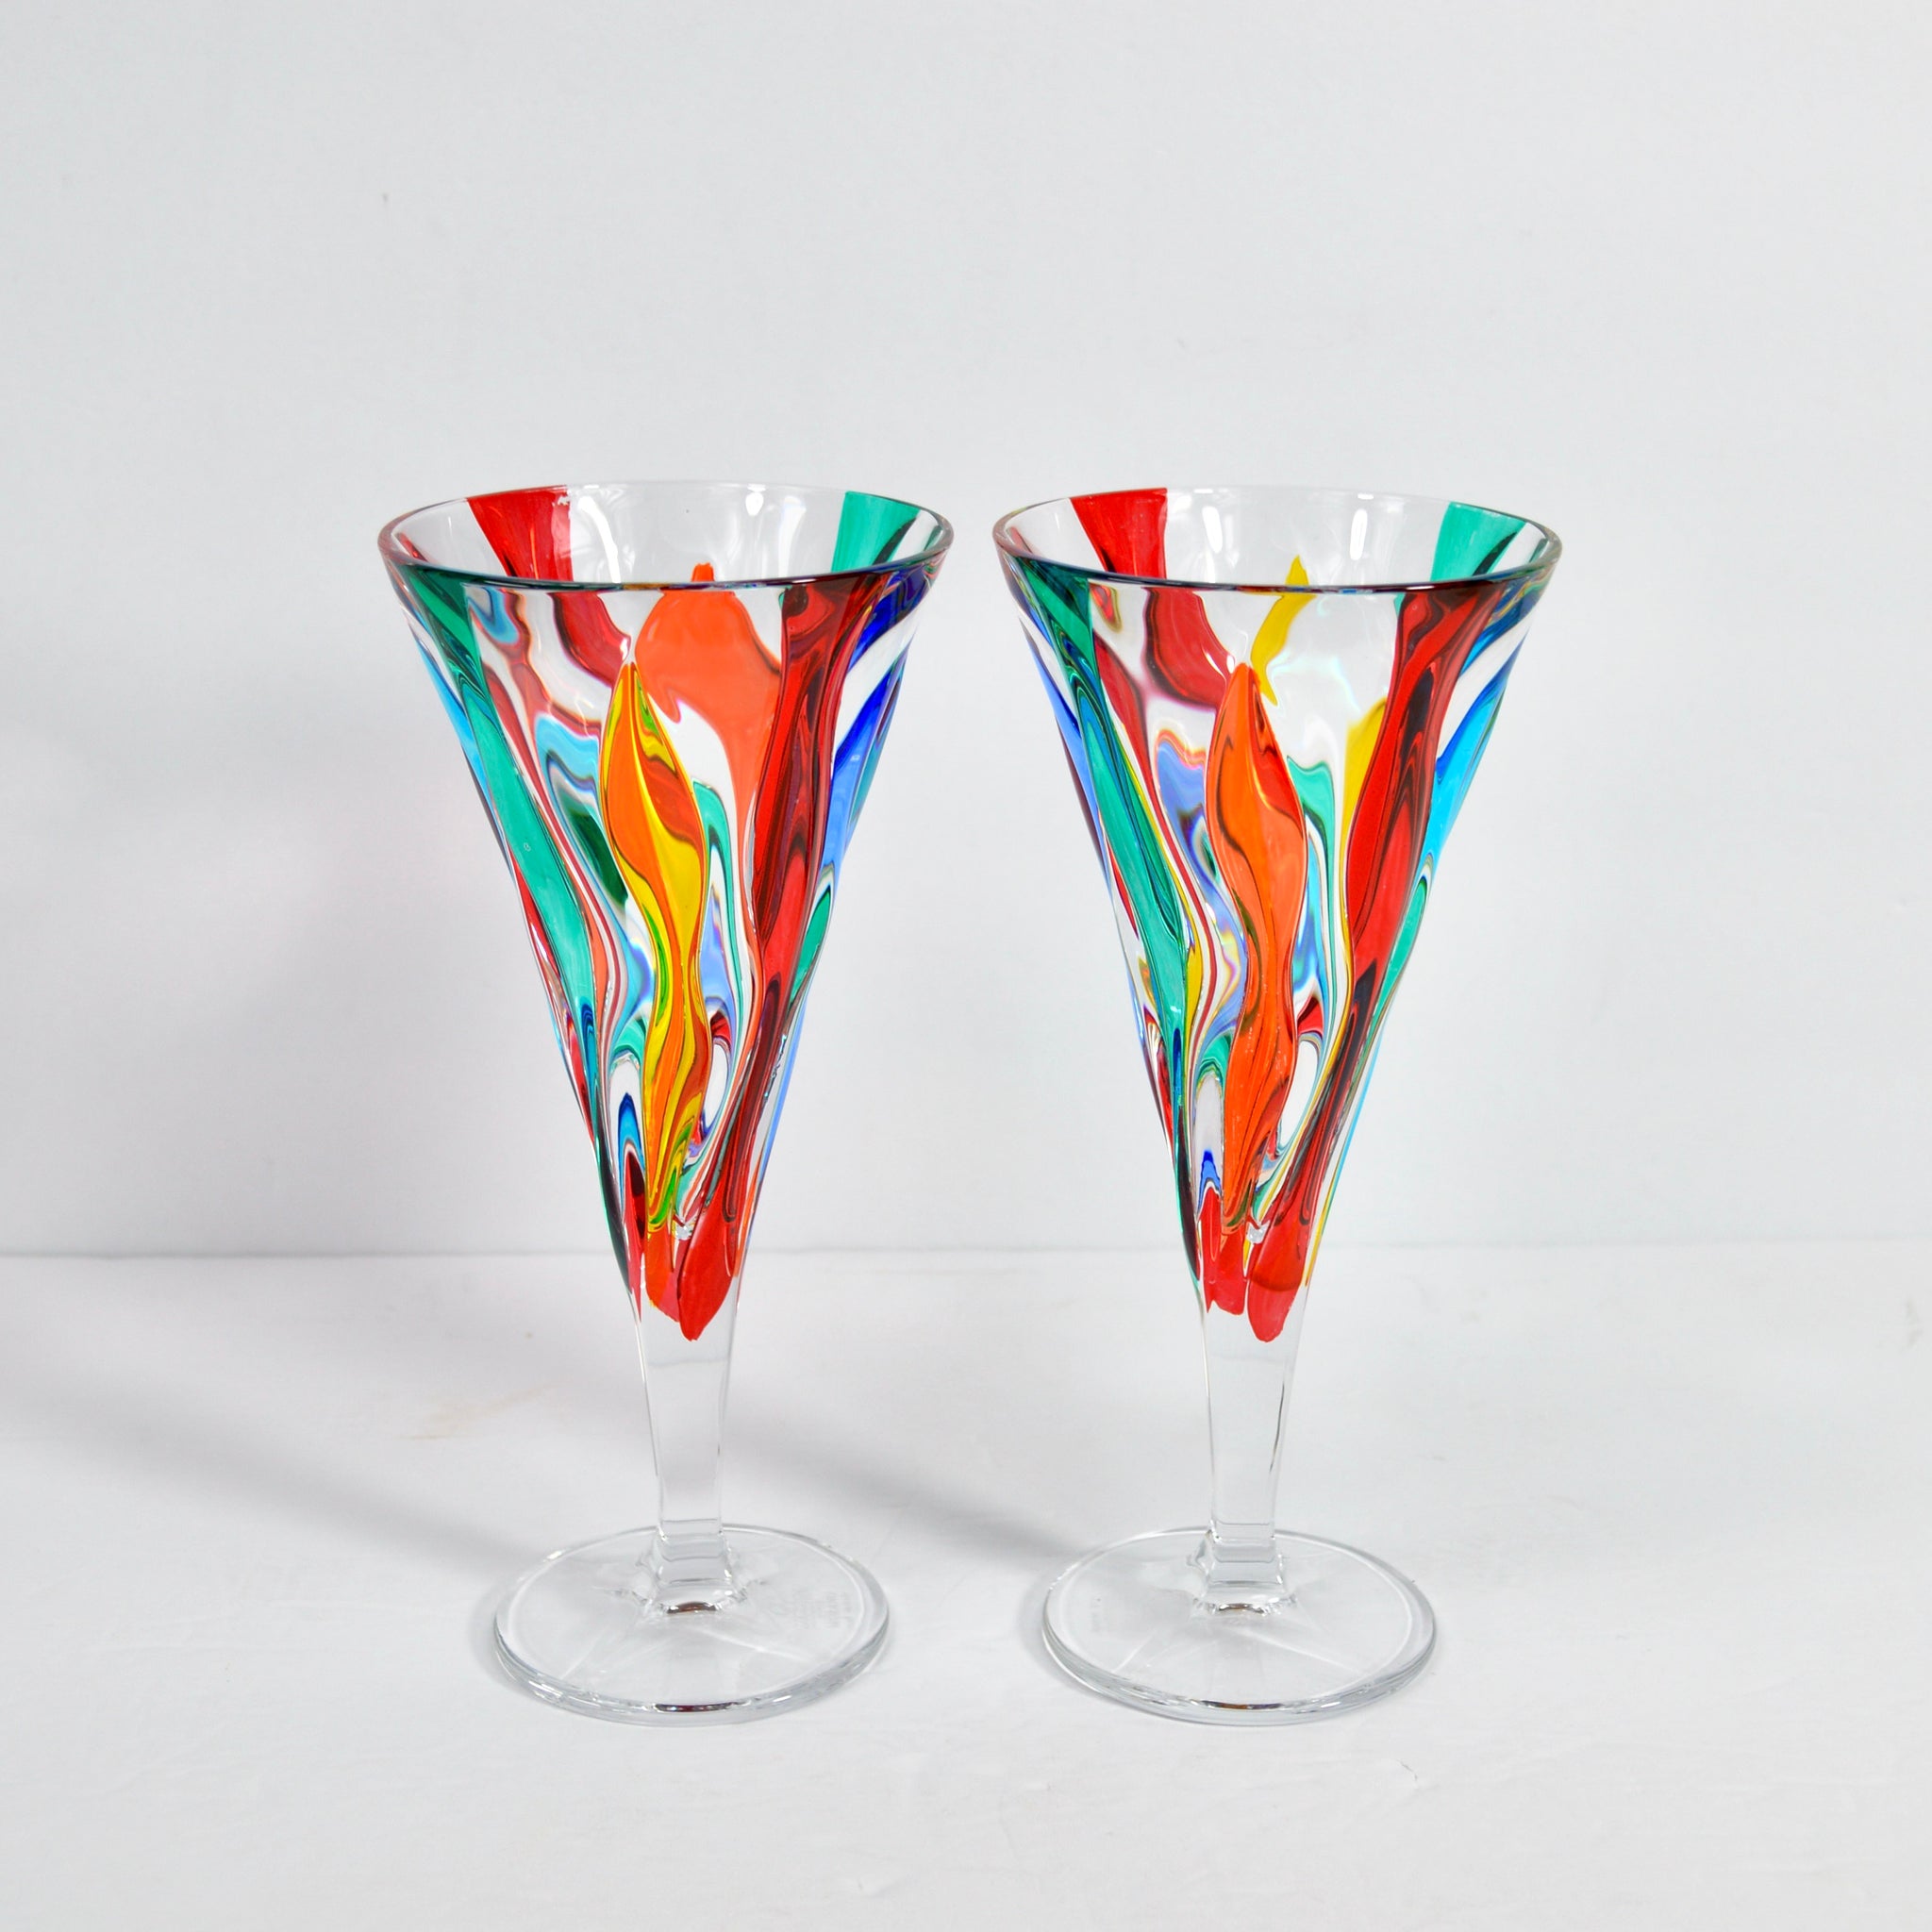 Crystalline Wine Glasses (Set of 2)